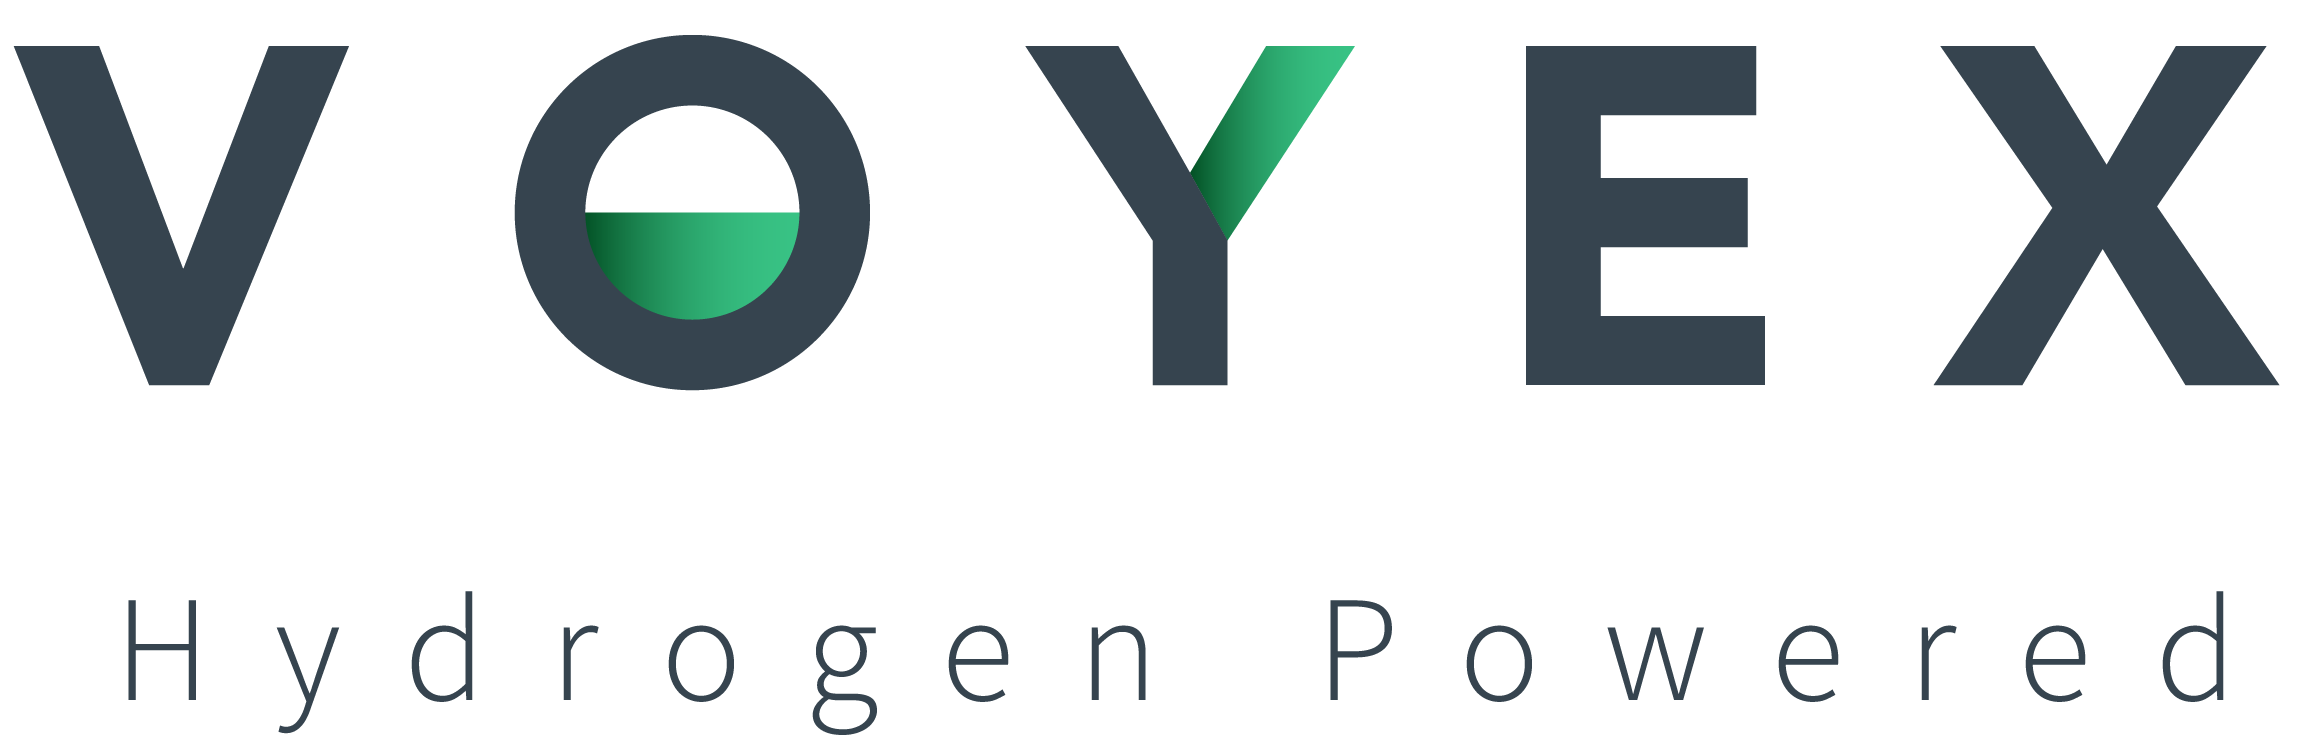 Voyex hydrogen powered logo